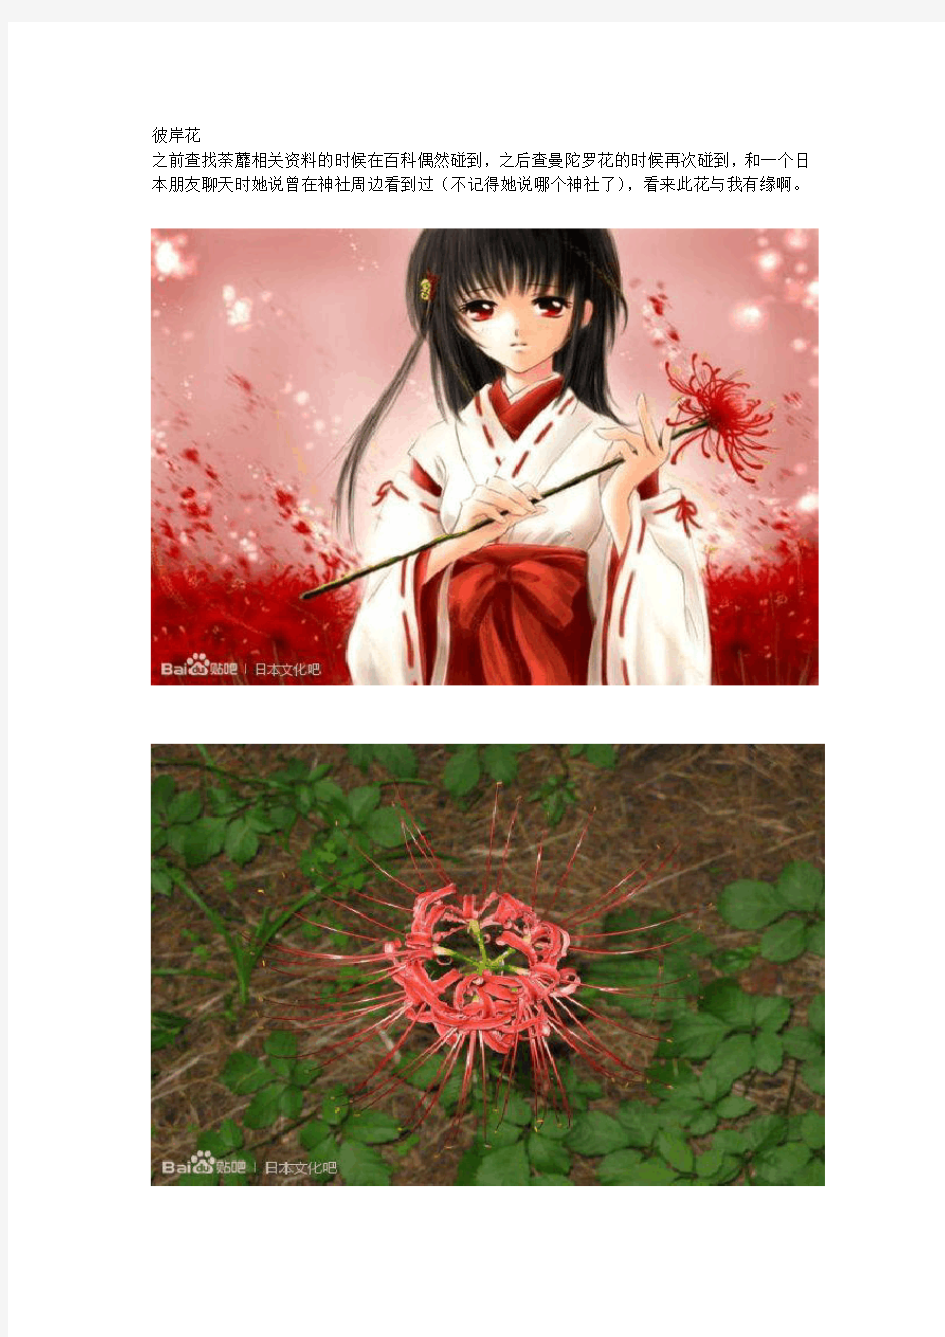 那些日本文化里的花木